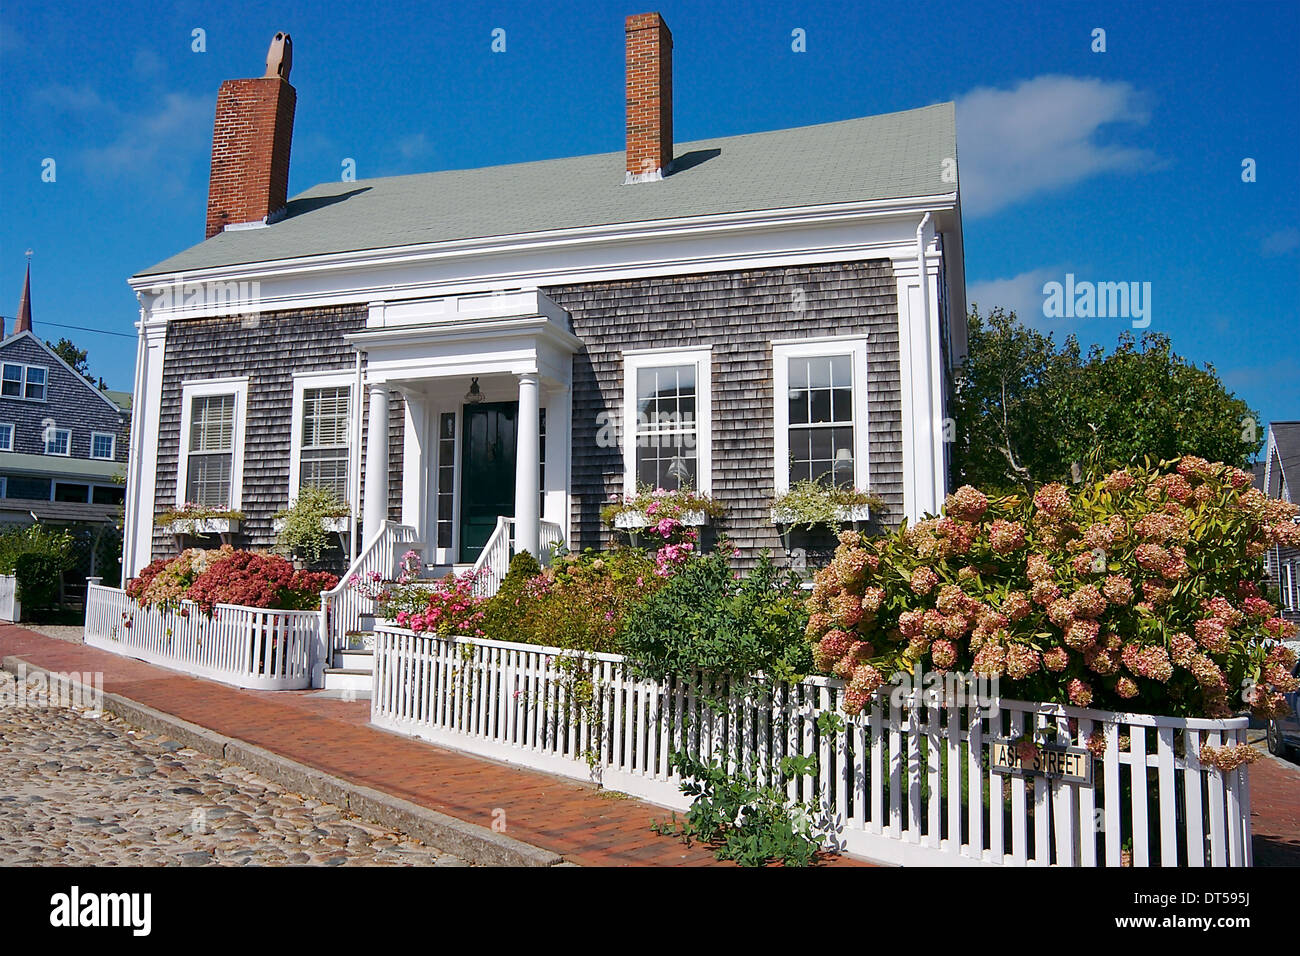 Une jolie maison de bardeaux sur une rue pavée, sur l'île de Nantucket, Massachusetts Banque D'Images